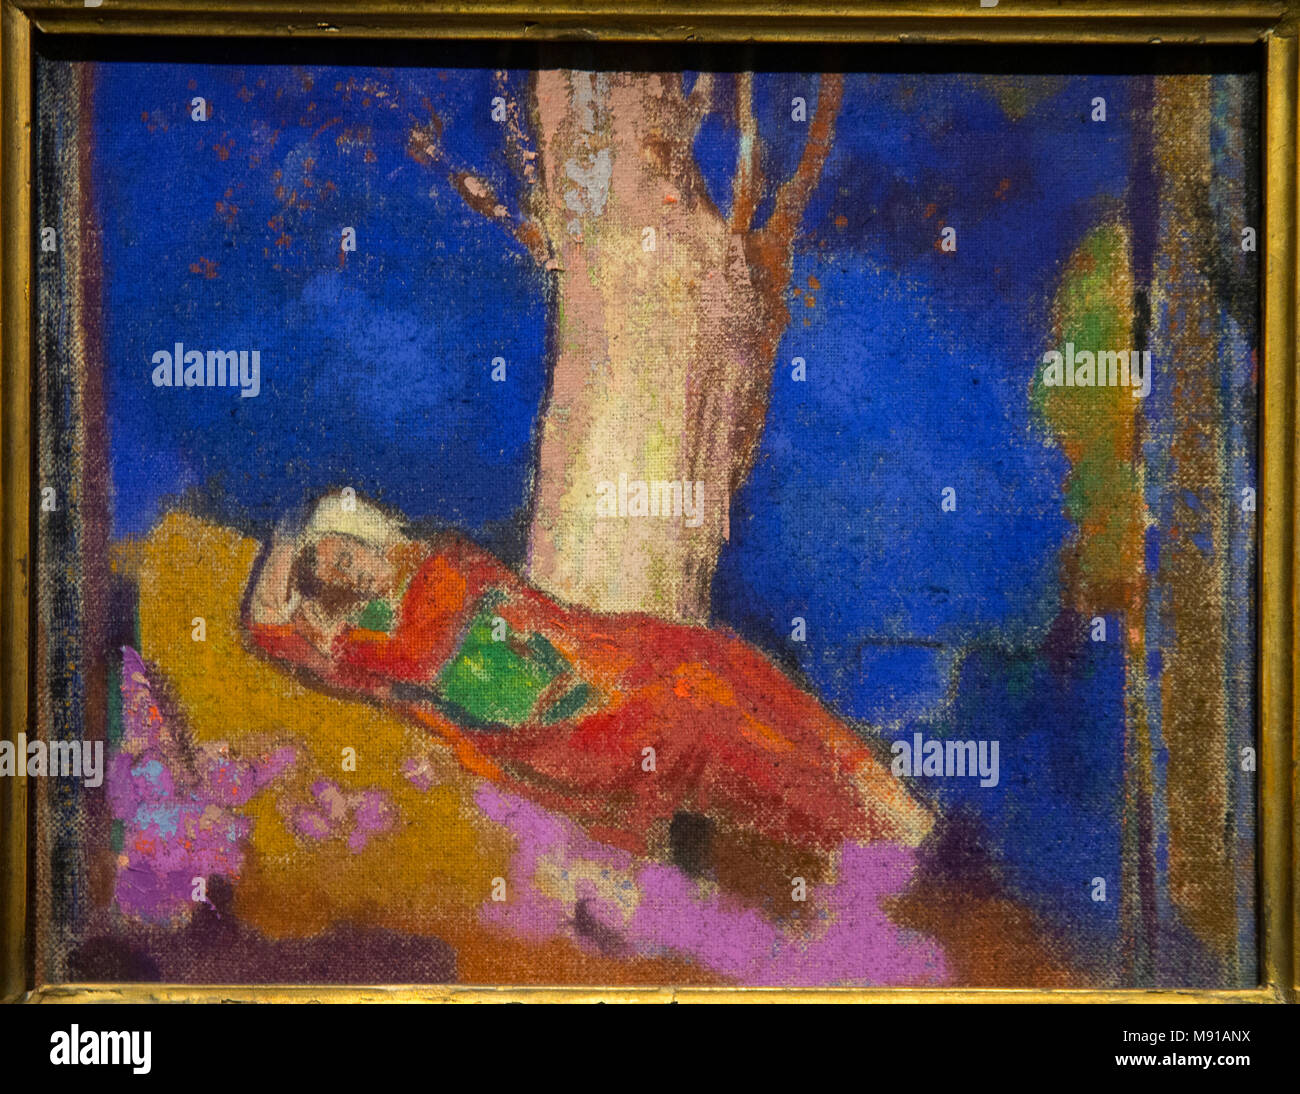 Odilon Redon, Frau schlafend unter einem Baum, Paris, 1900-1901, Öl auf Leinwand. Shchukin Sammlung, Museum Ermitage, St. Petersburg. Schoß während ausgestellt Stockfoto